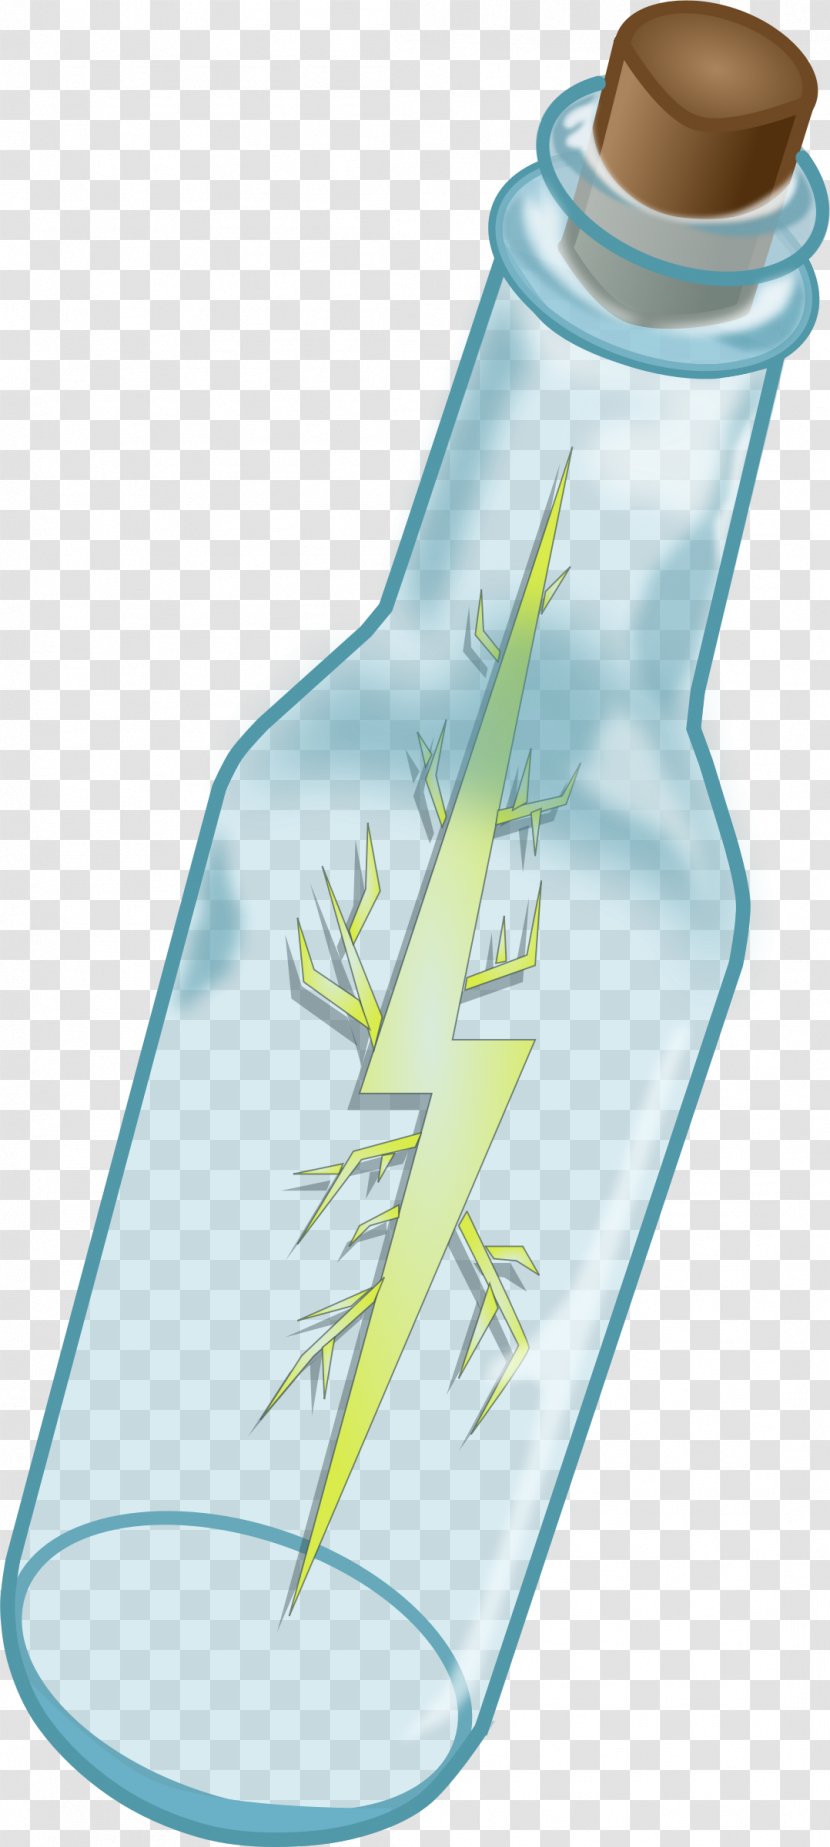 Lightning In A Bottle Clip Art - Water Bottles Transparent PNG